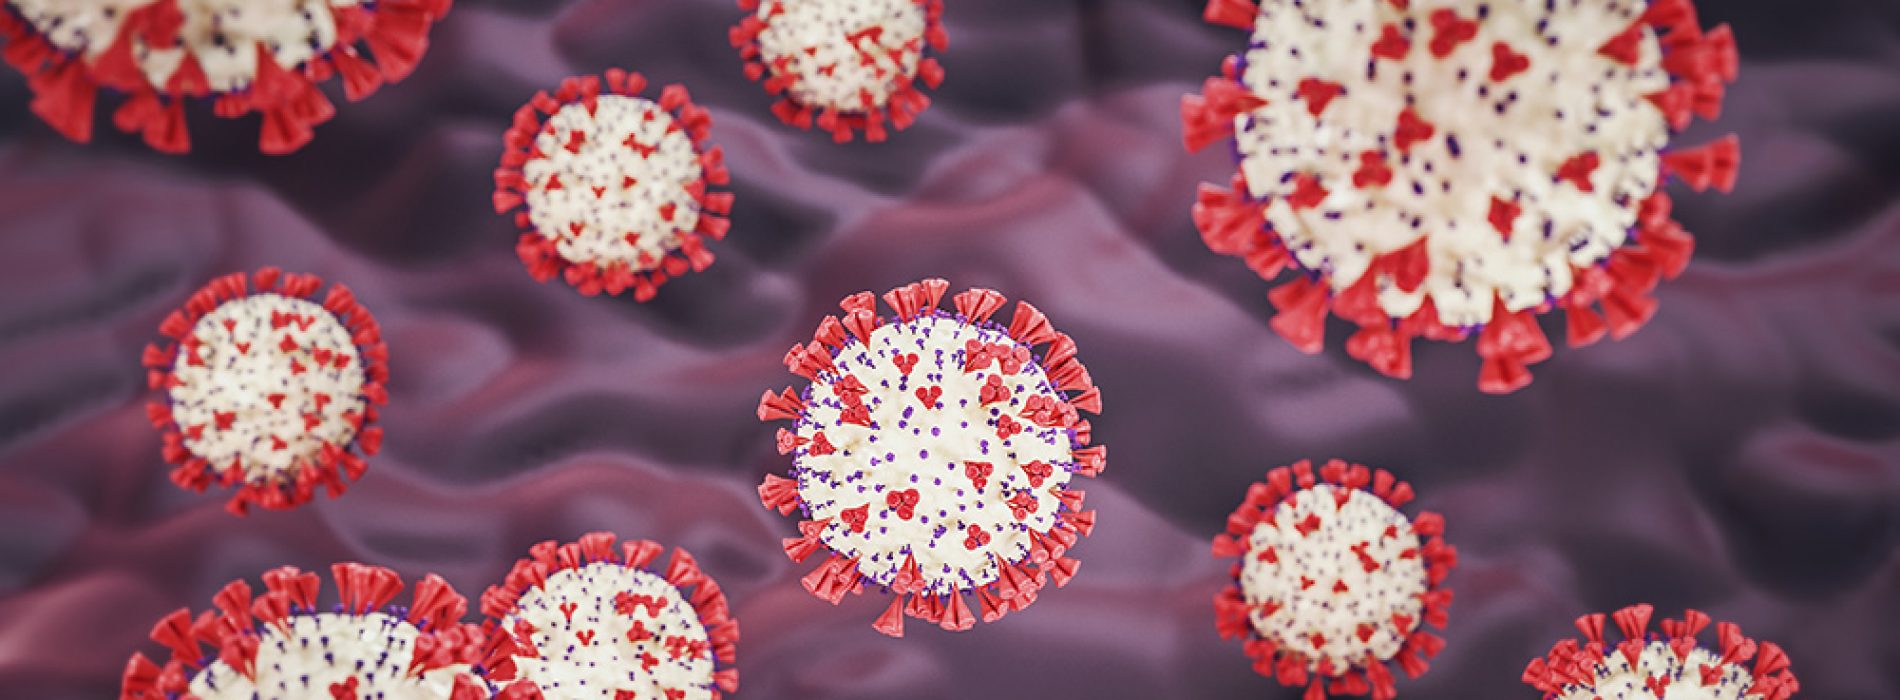 Onderzoek in IJsland identificeert coronavirusmutaties, zegt dat mensen besmet kunnen zijn door meerdere golven van varianten